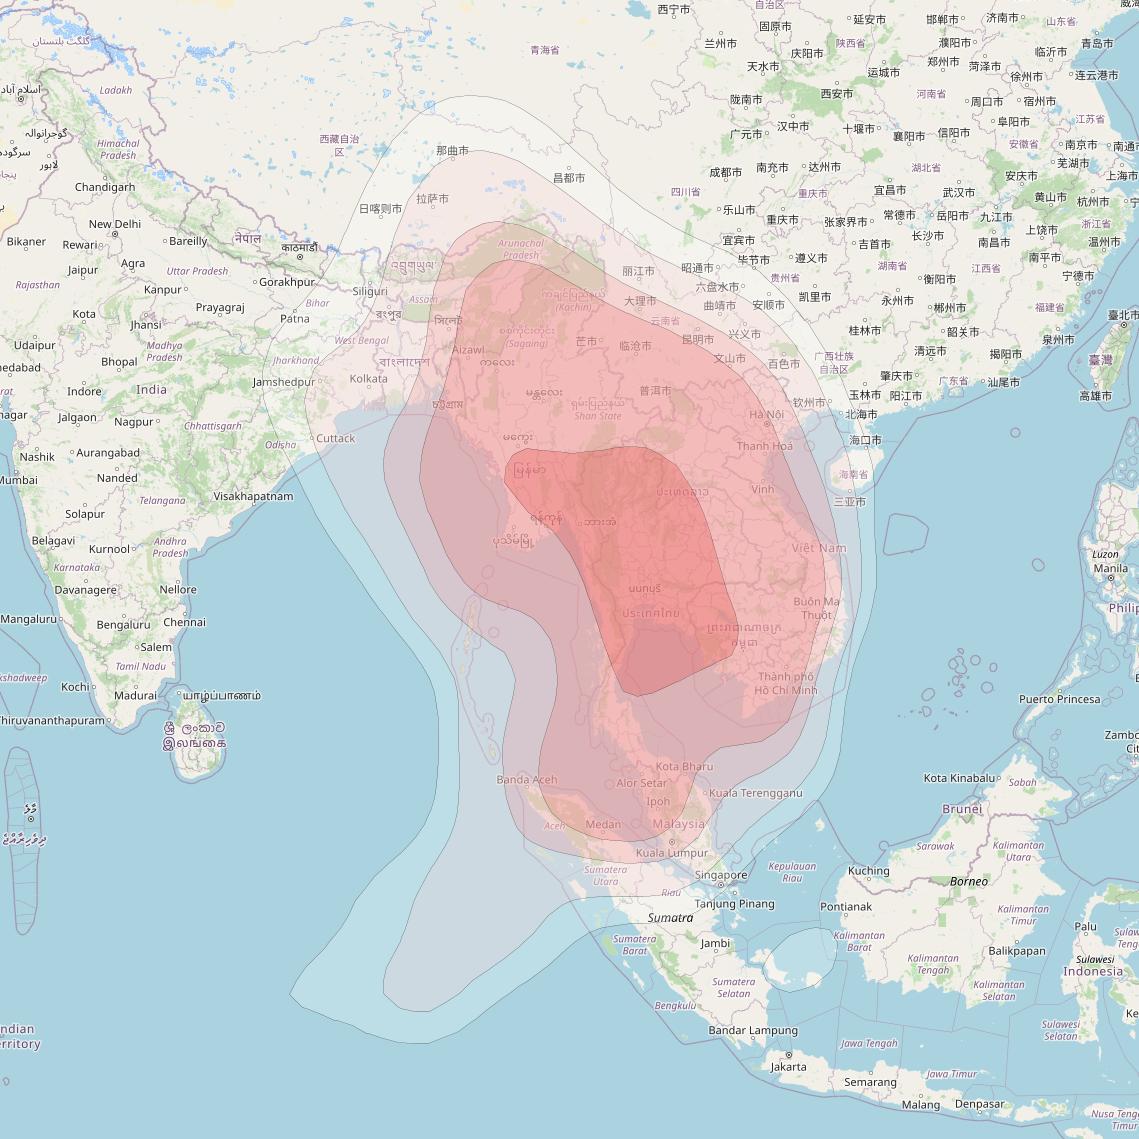 Koreasat 7 at 116° E downlink Ku-band Indochina beam coverage map